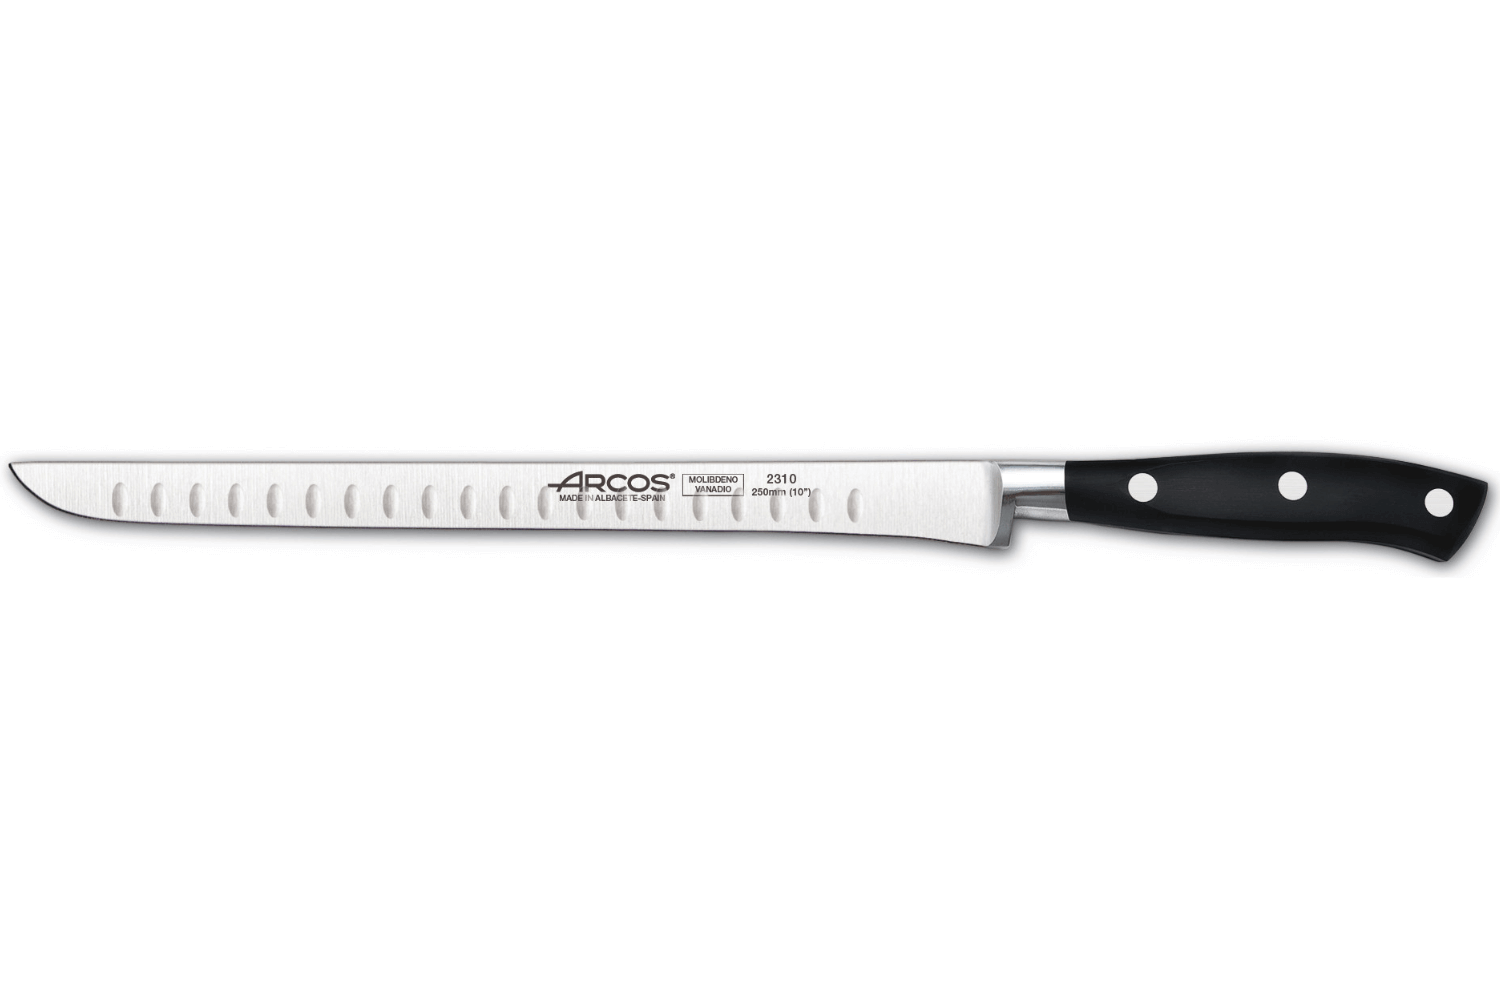 Couteau à jambon ou à saumon alvéolé  Boutique officielle de la  coutellerie française Fischer